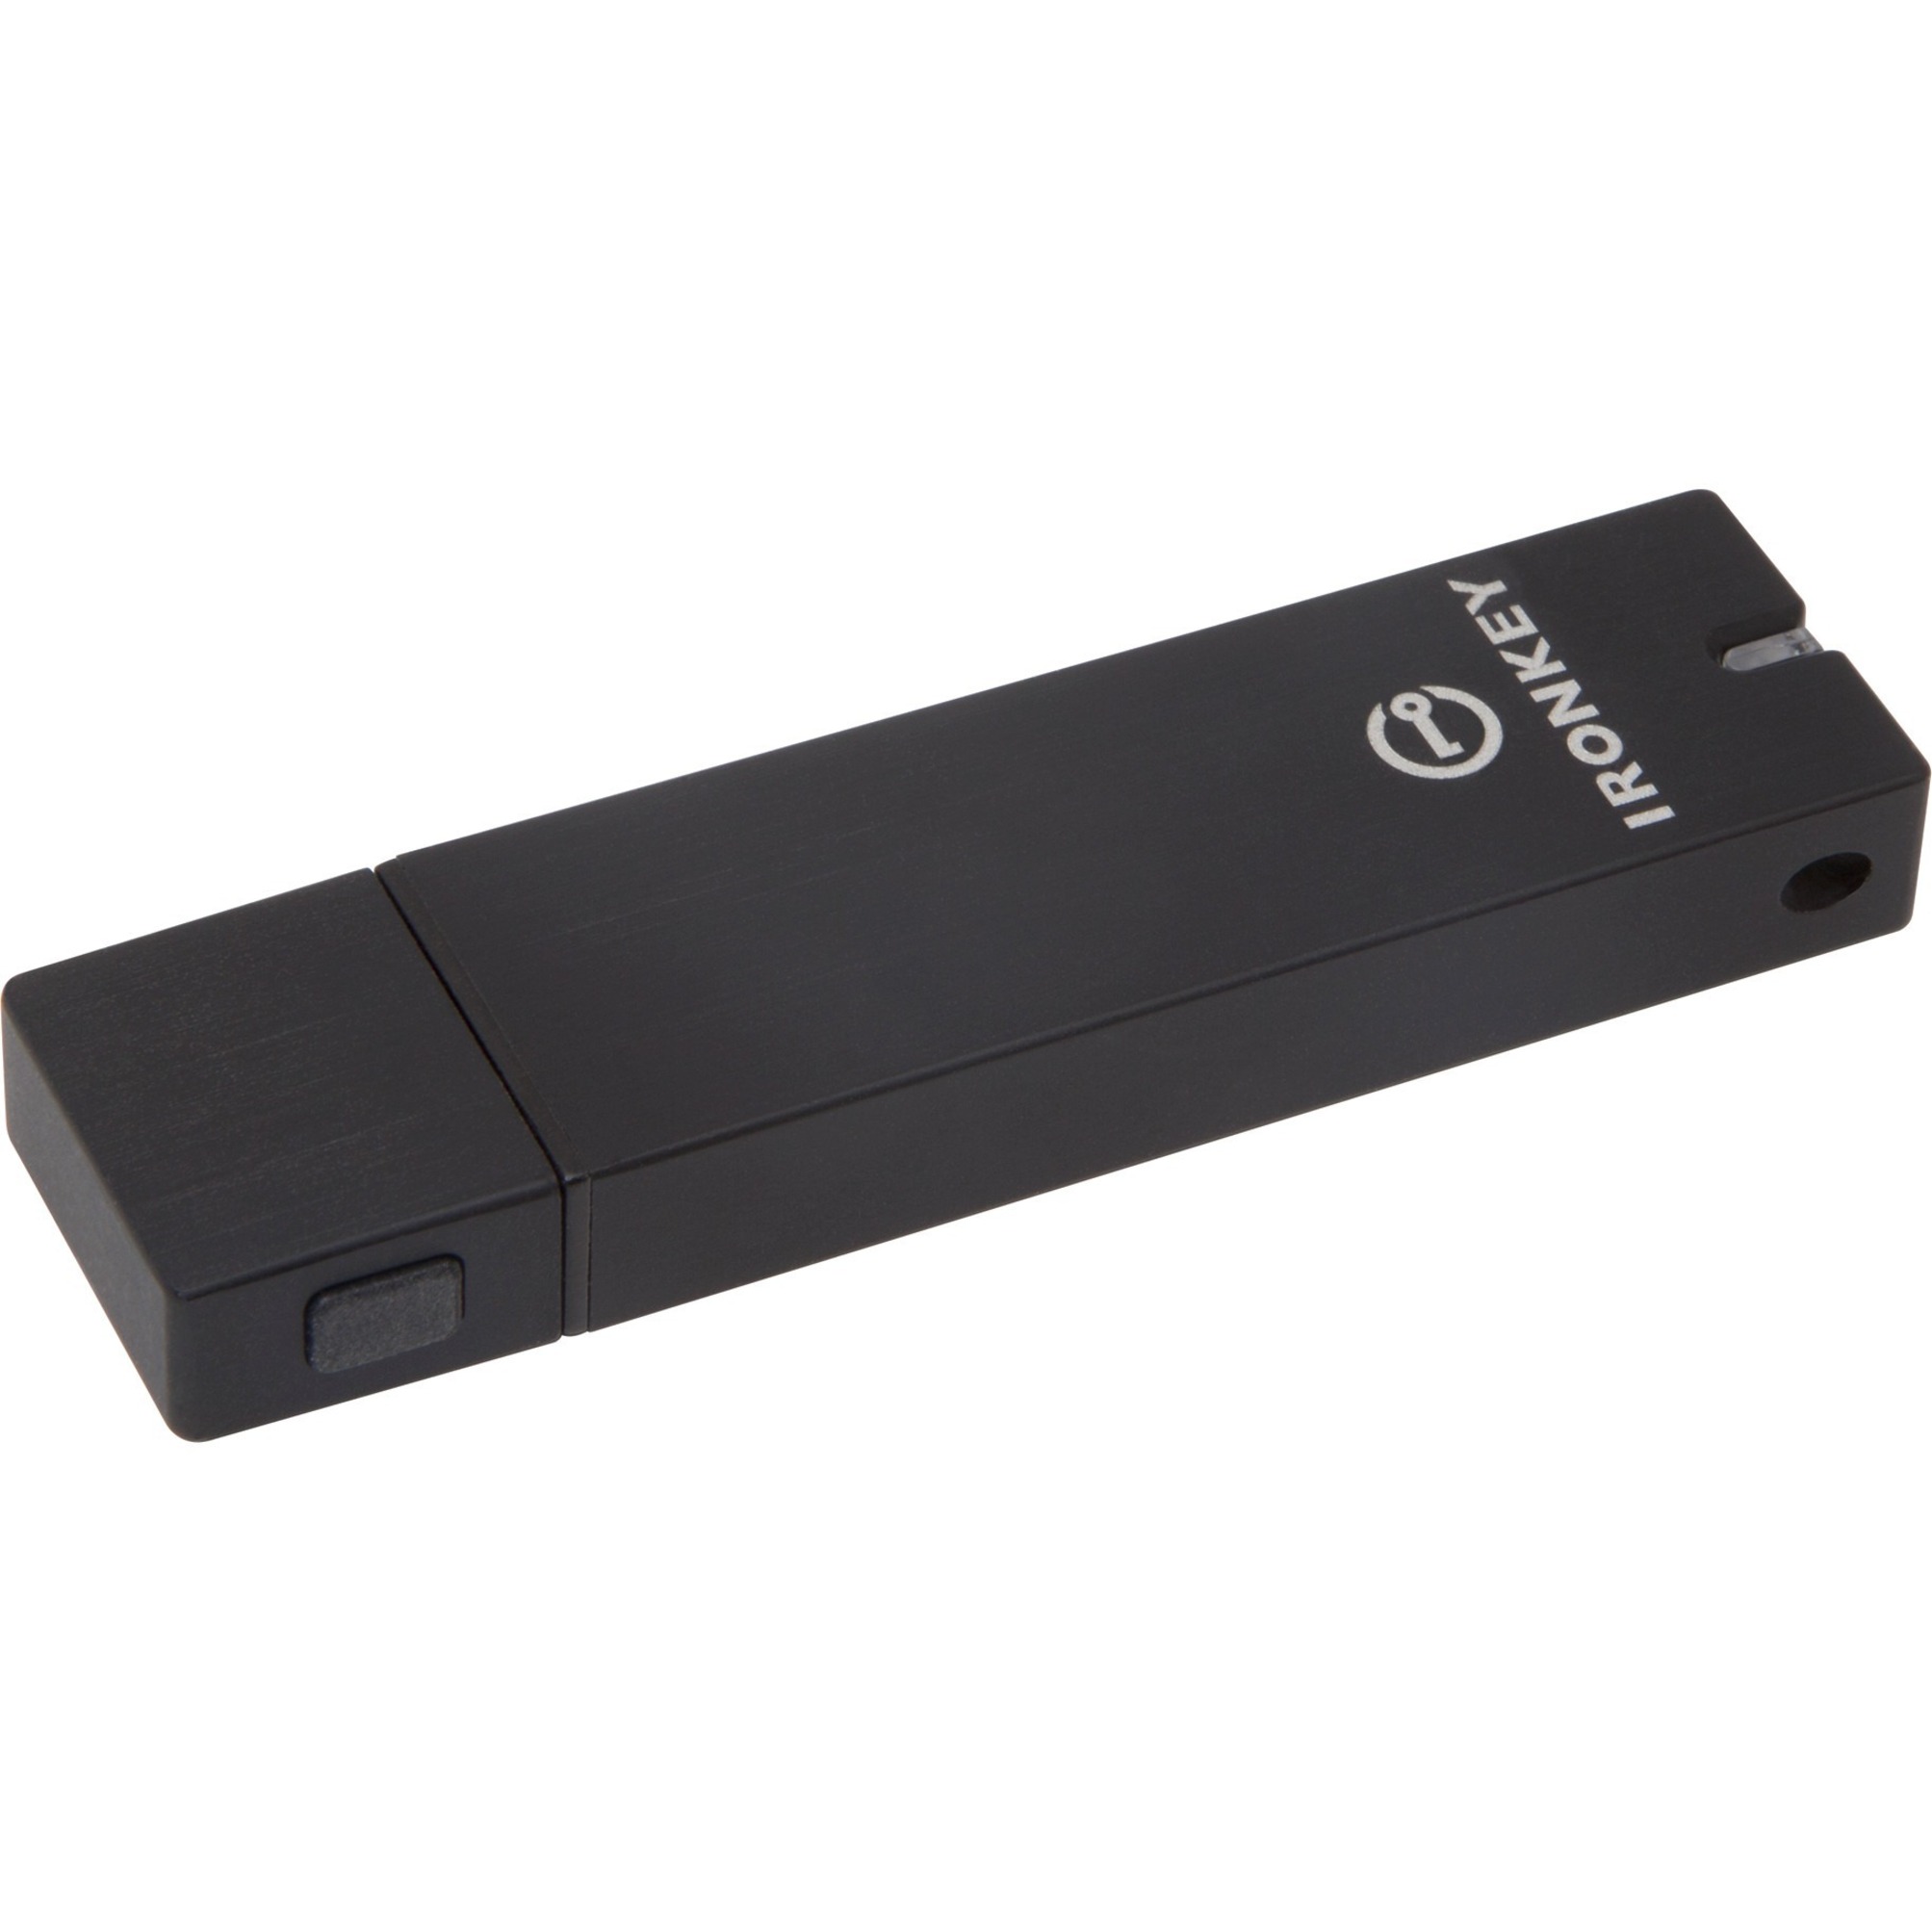 IronKey 8GB Basic S250 USB 2.0 Flash Drive - image 1 of 4